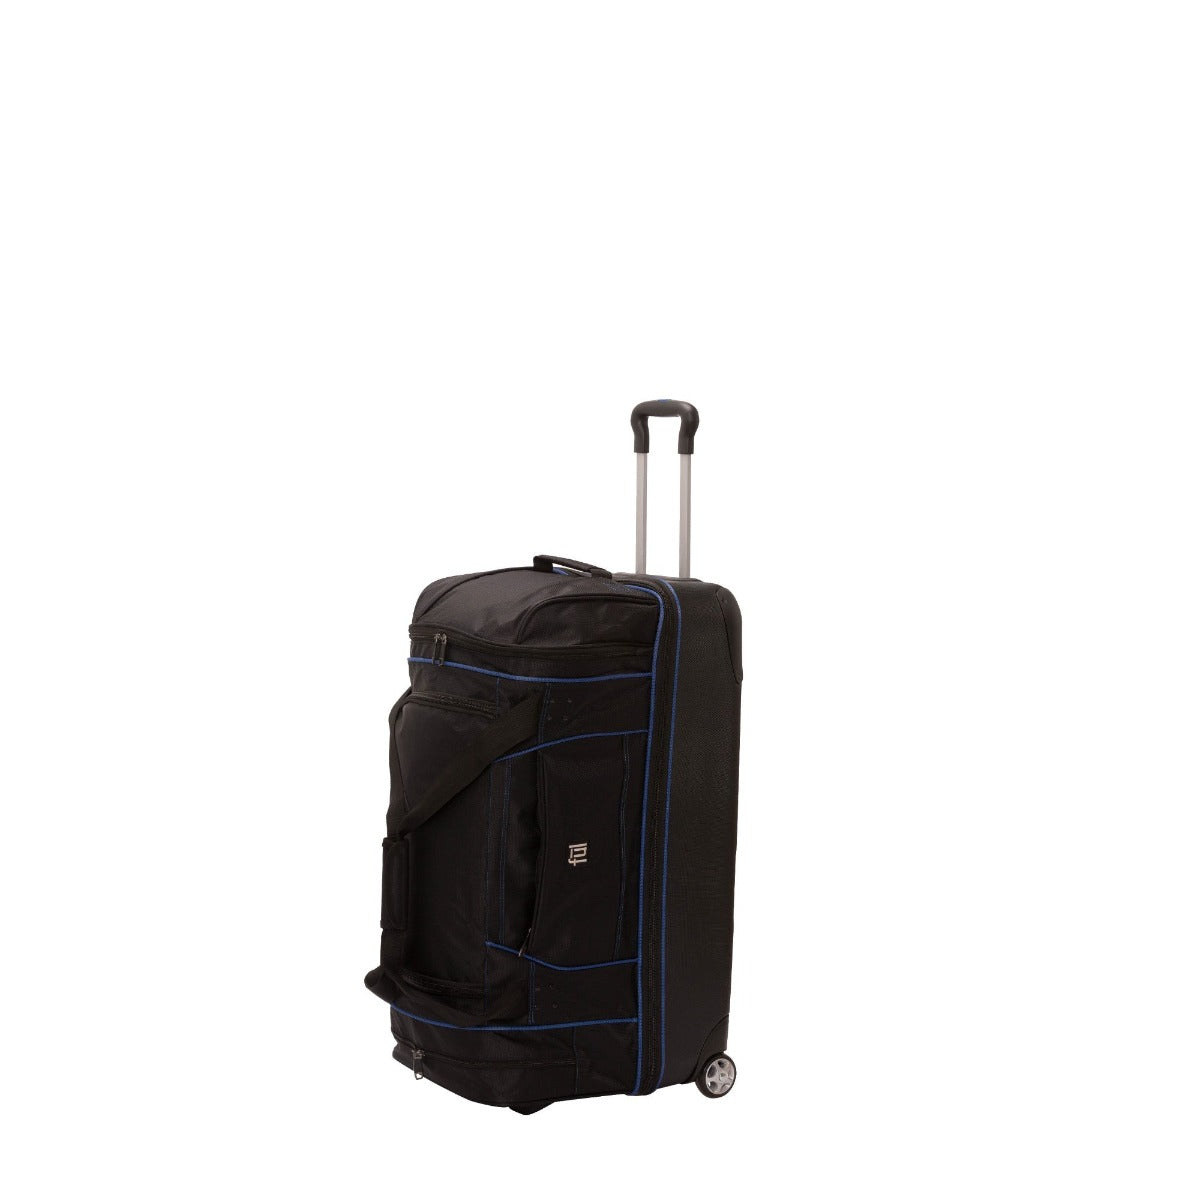 Shop Ful Rolling Duffel Bag (Black, 28 inch) – Luggage Factory